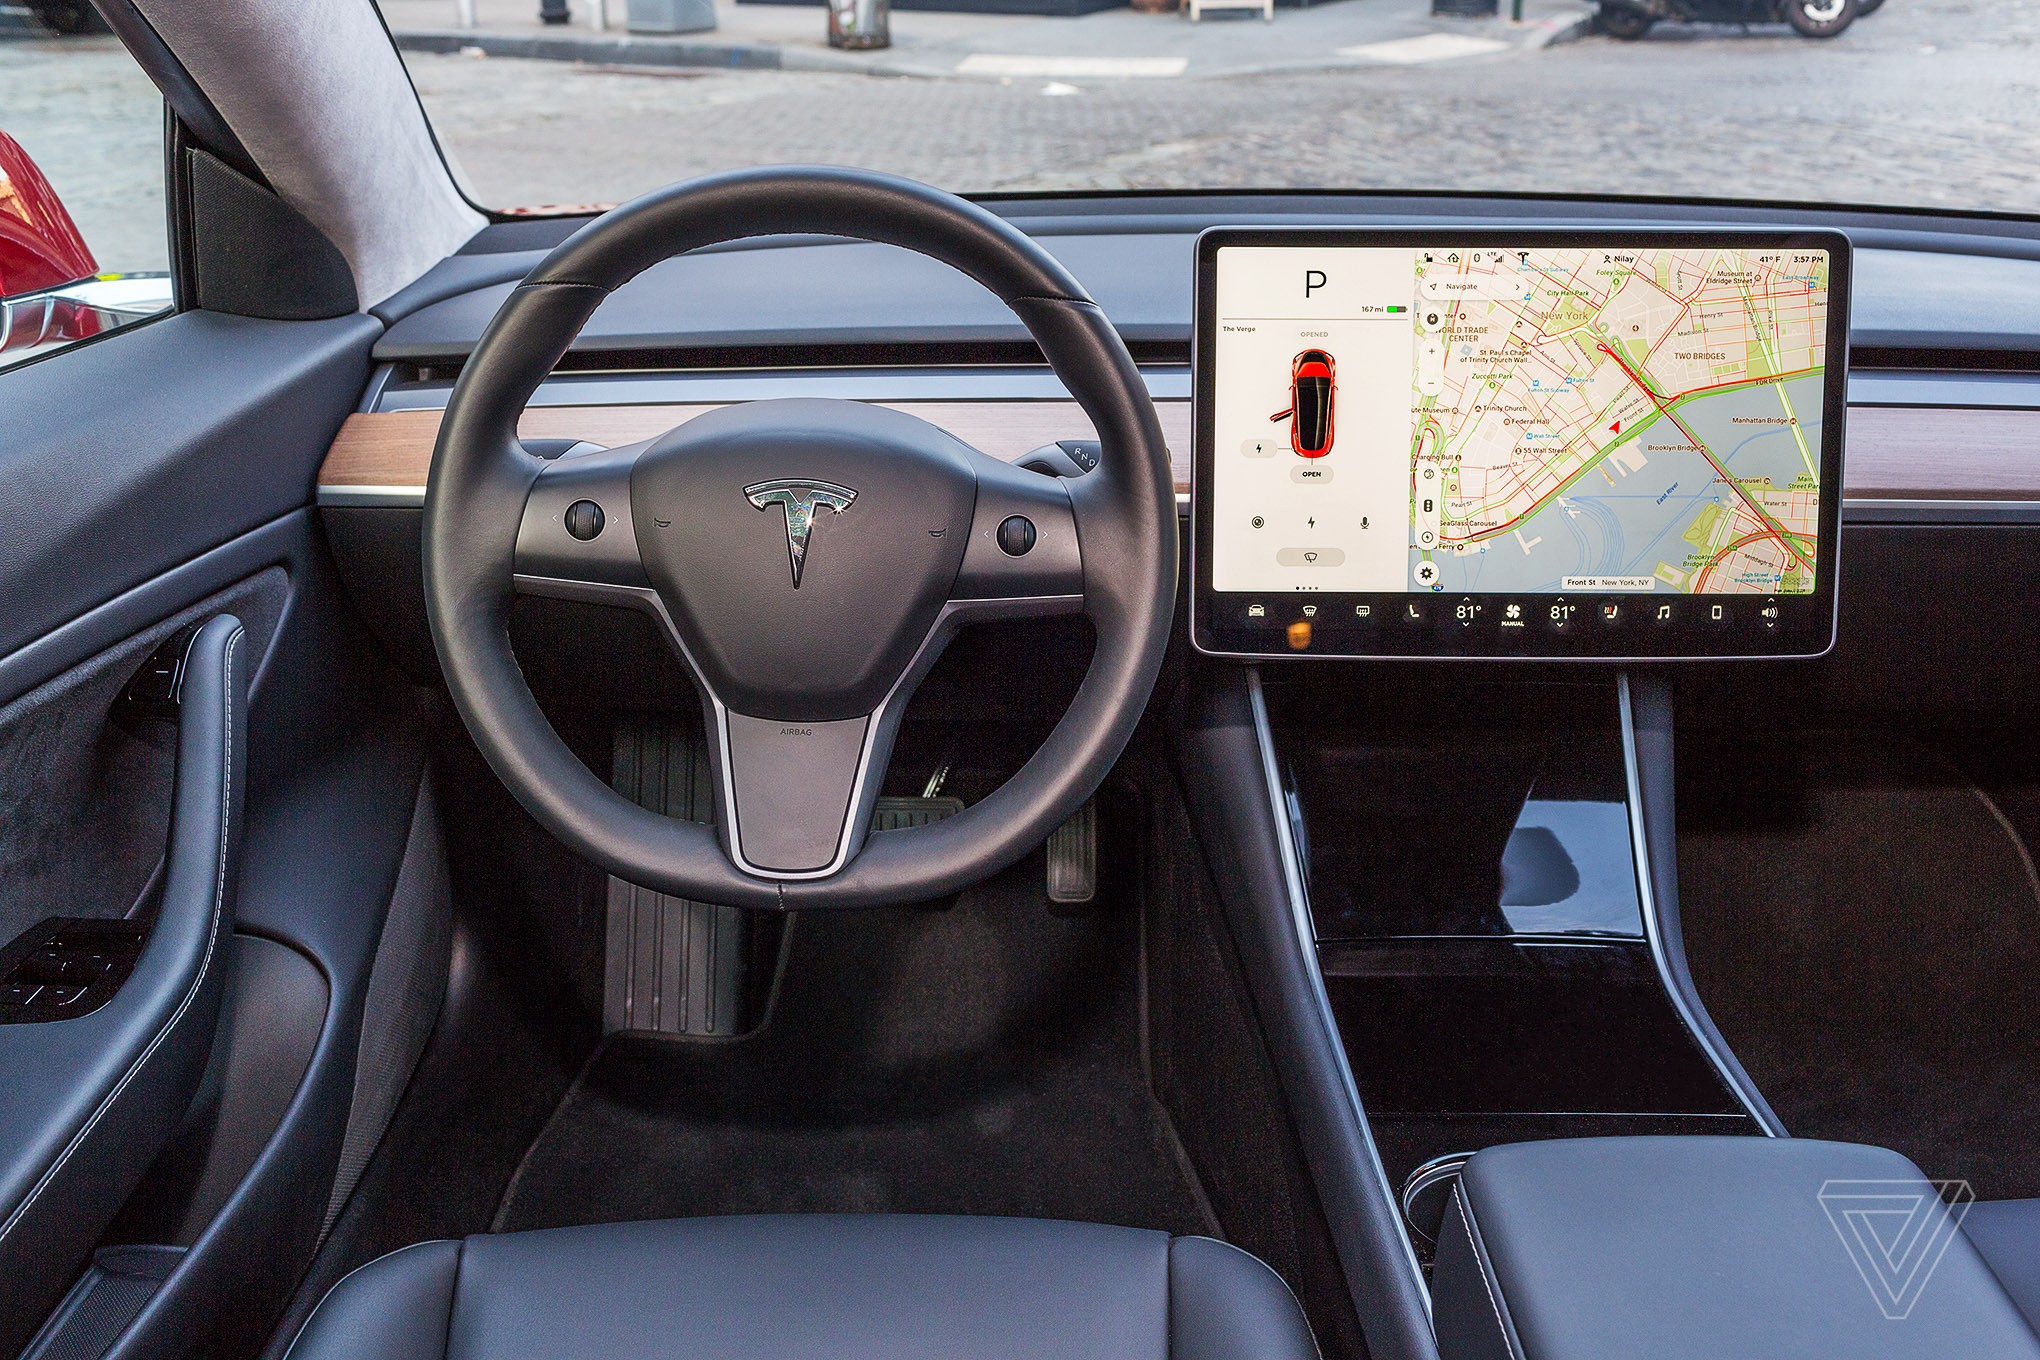 Компания Tesla модернизировала програмное обеспечение - теперь водитель может пользоваться автопилотом во время выезда с парковки